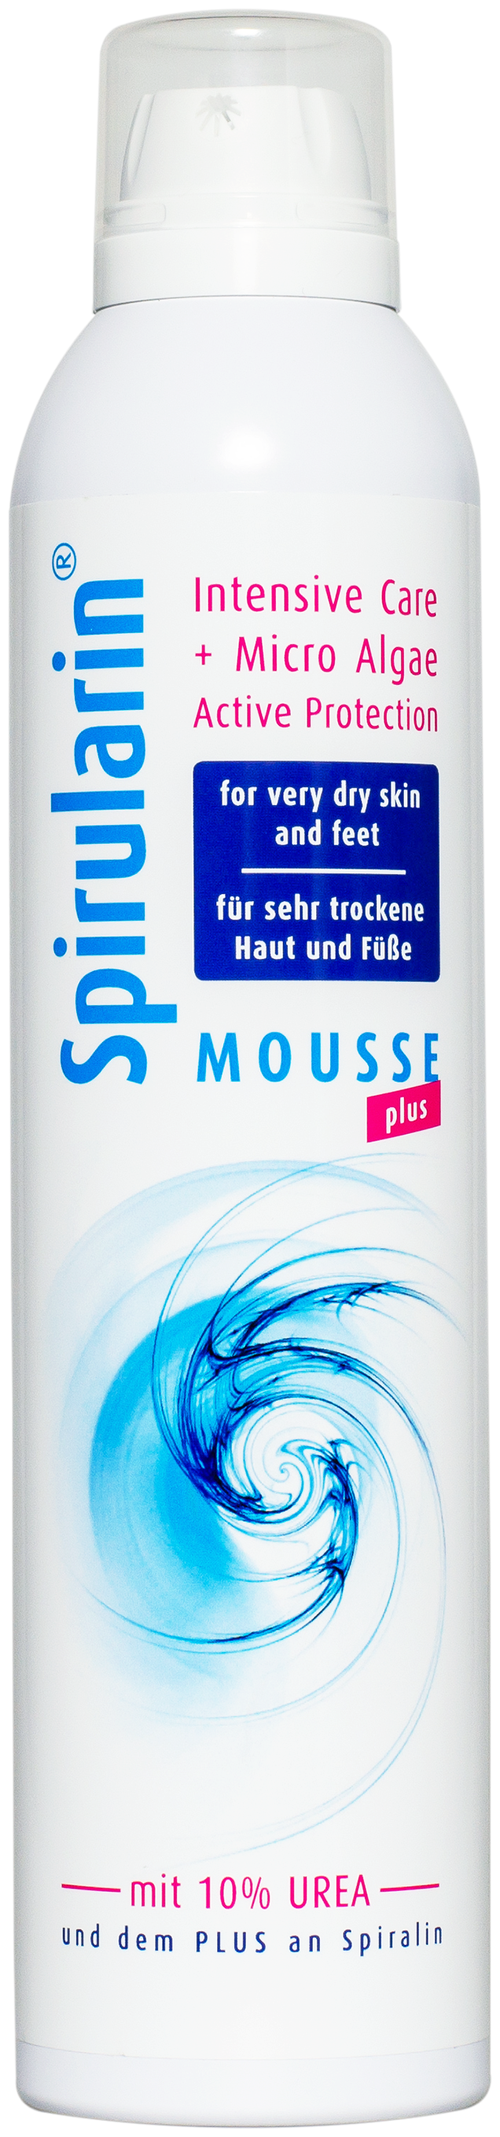 Spirularin Мусс для очень сухой и чувствительной кожи ног plus, 300 мл